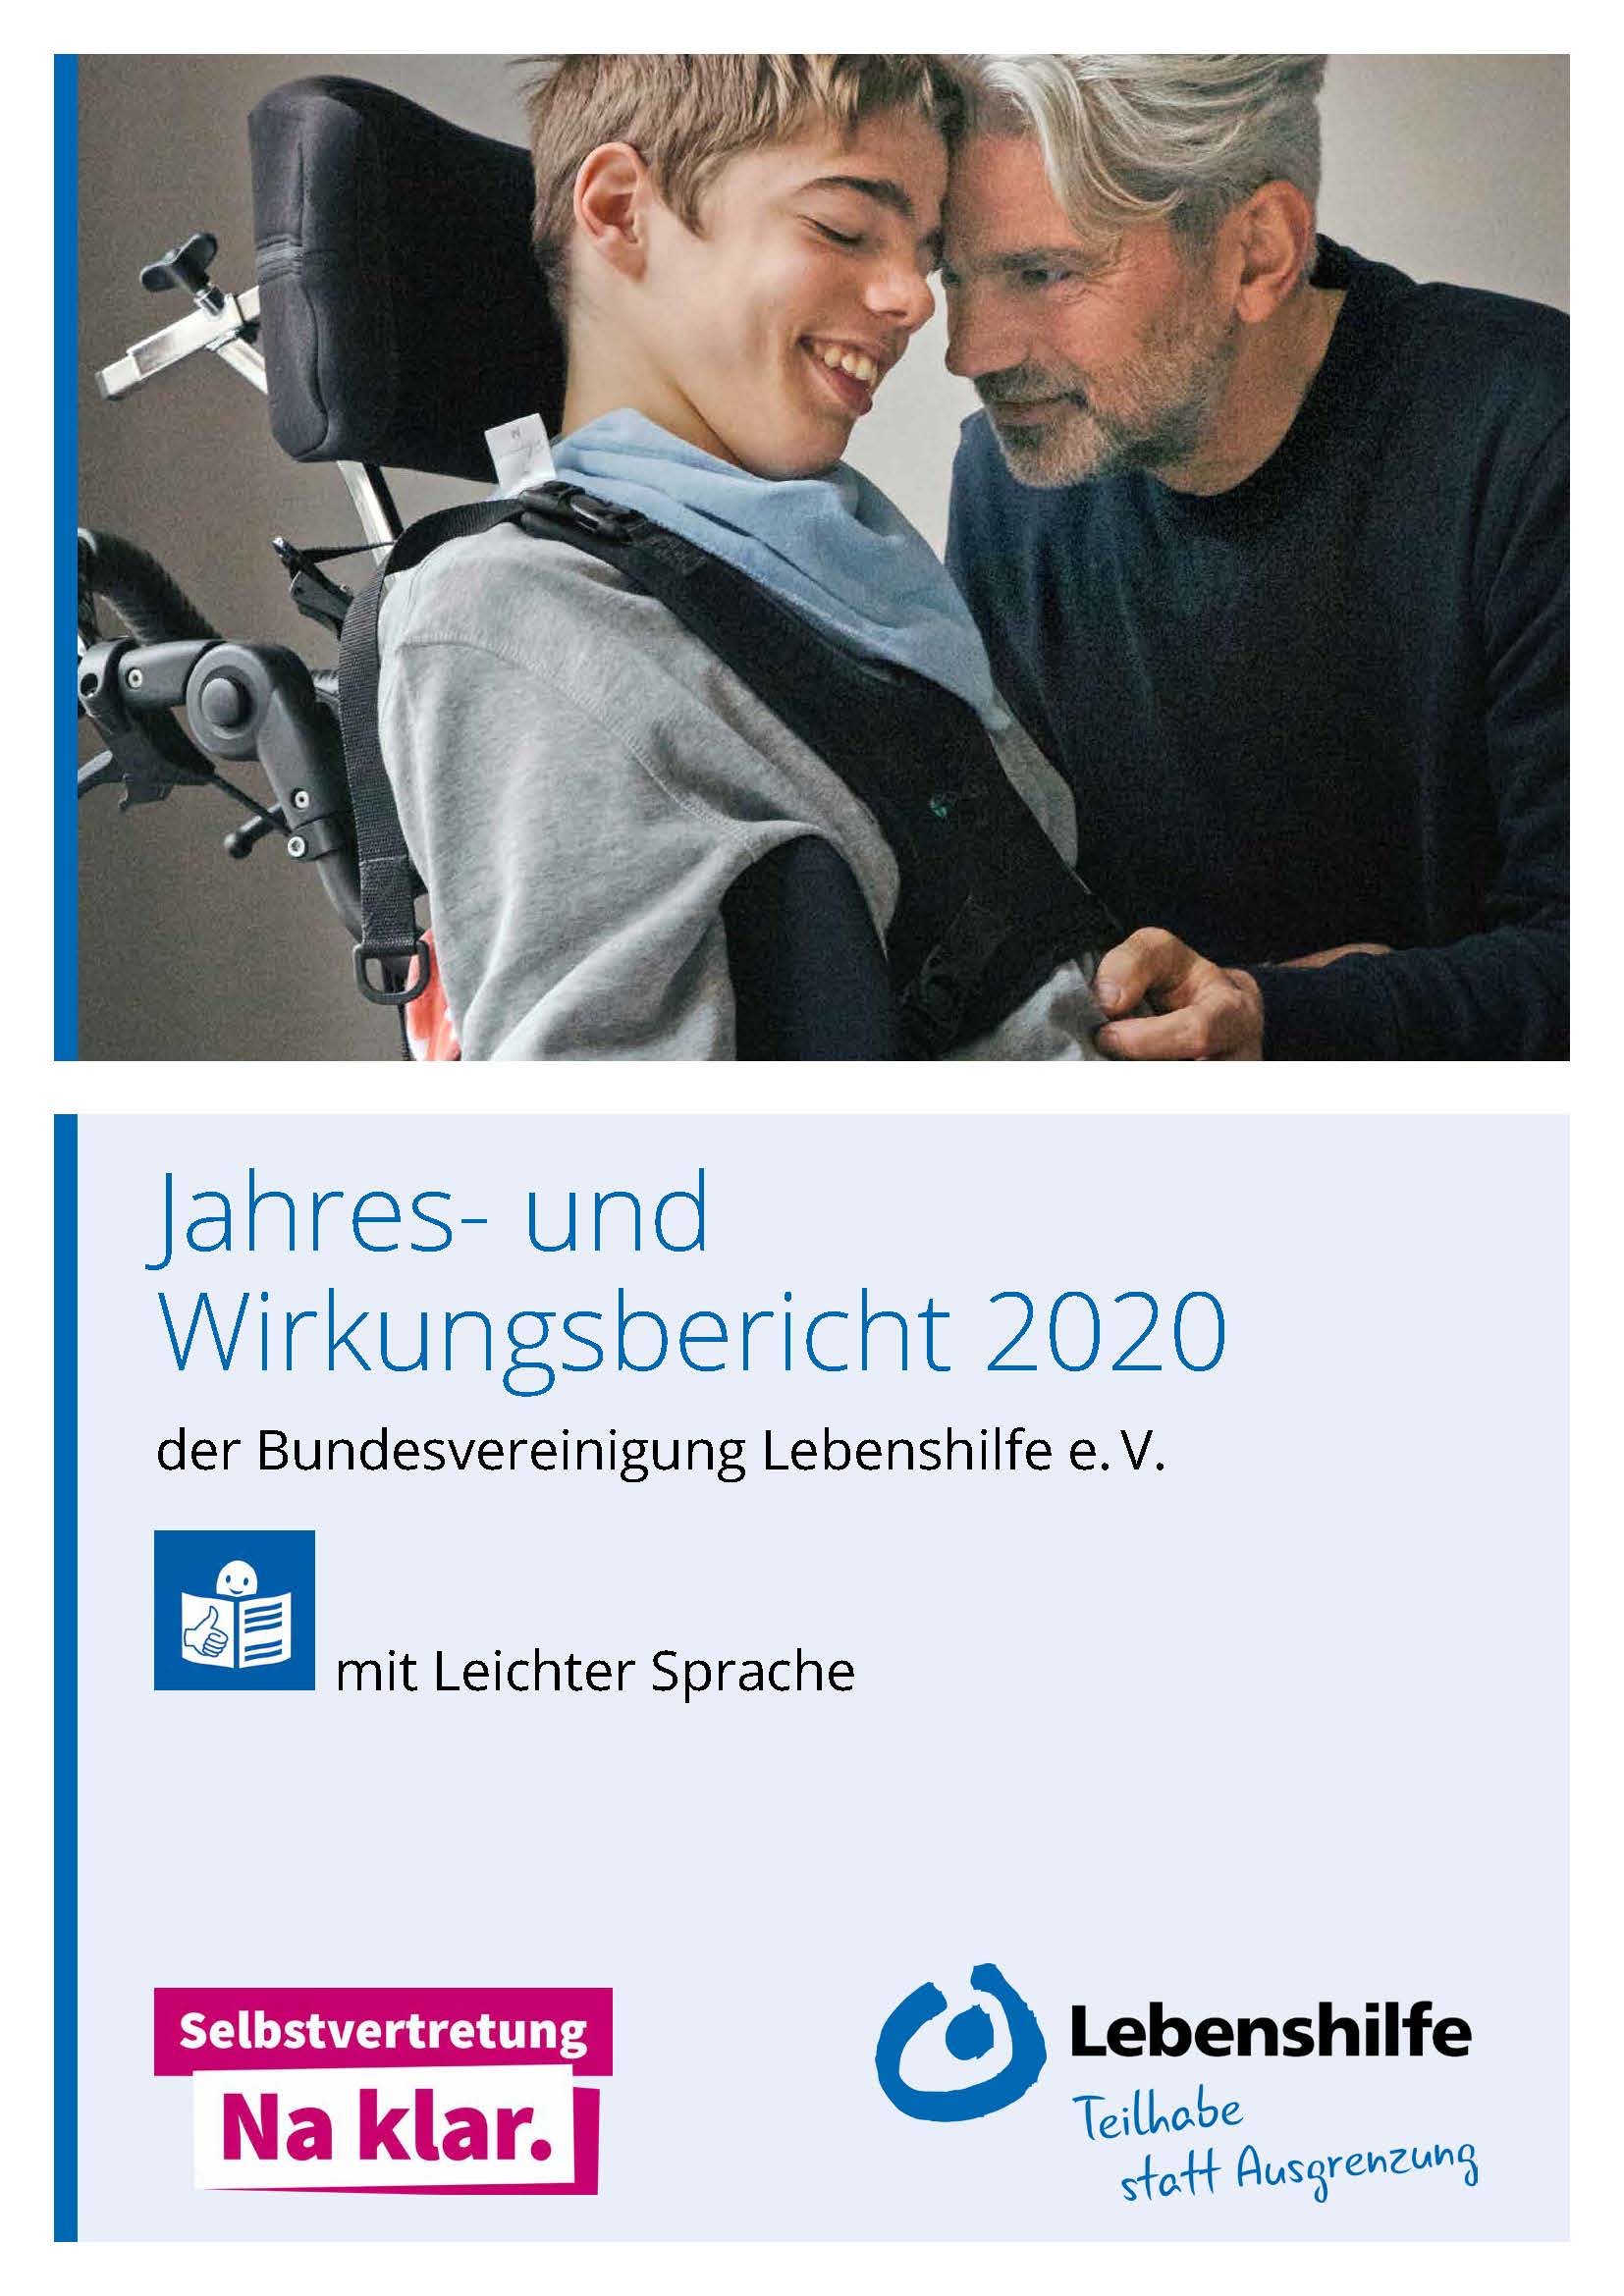 Abbildung der Titelseite vom Jahres- und Wirkungsbericht 2020